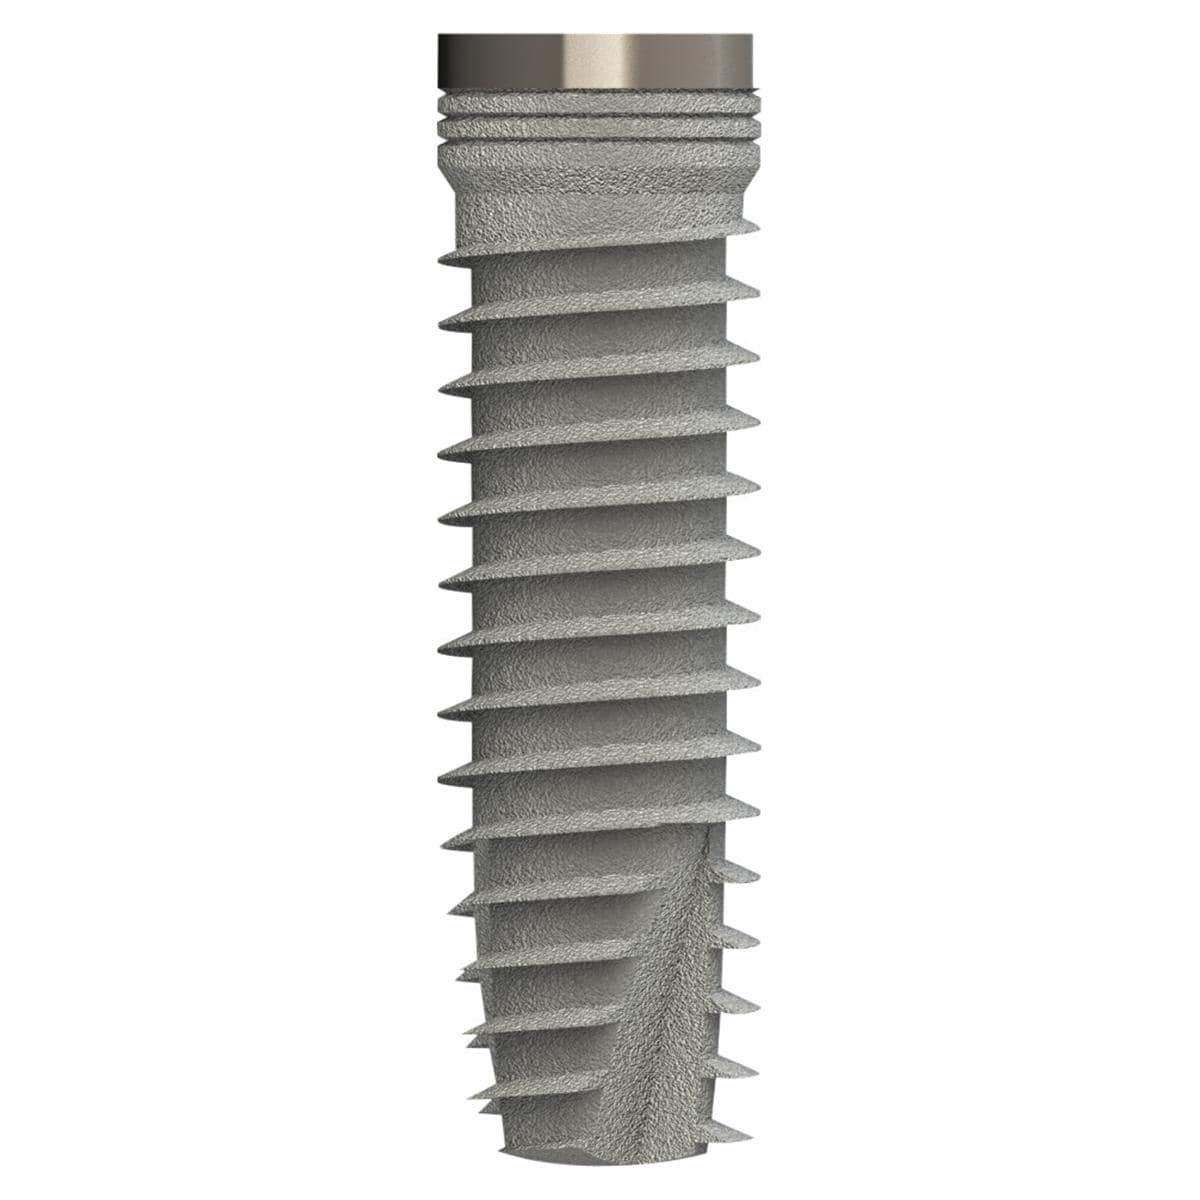 TL Implantat BONITex® P Ø 3,8 mm - Länge 14 mm